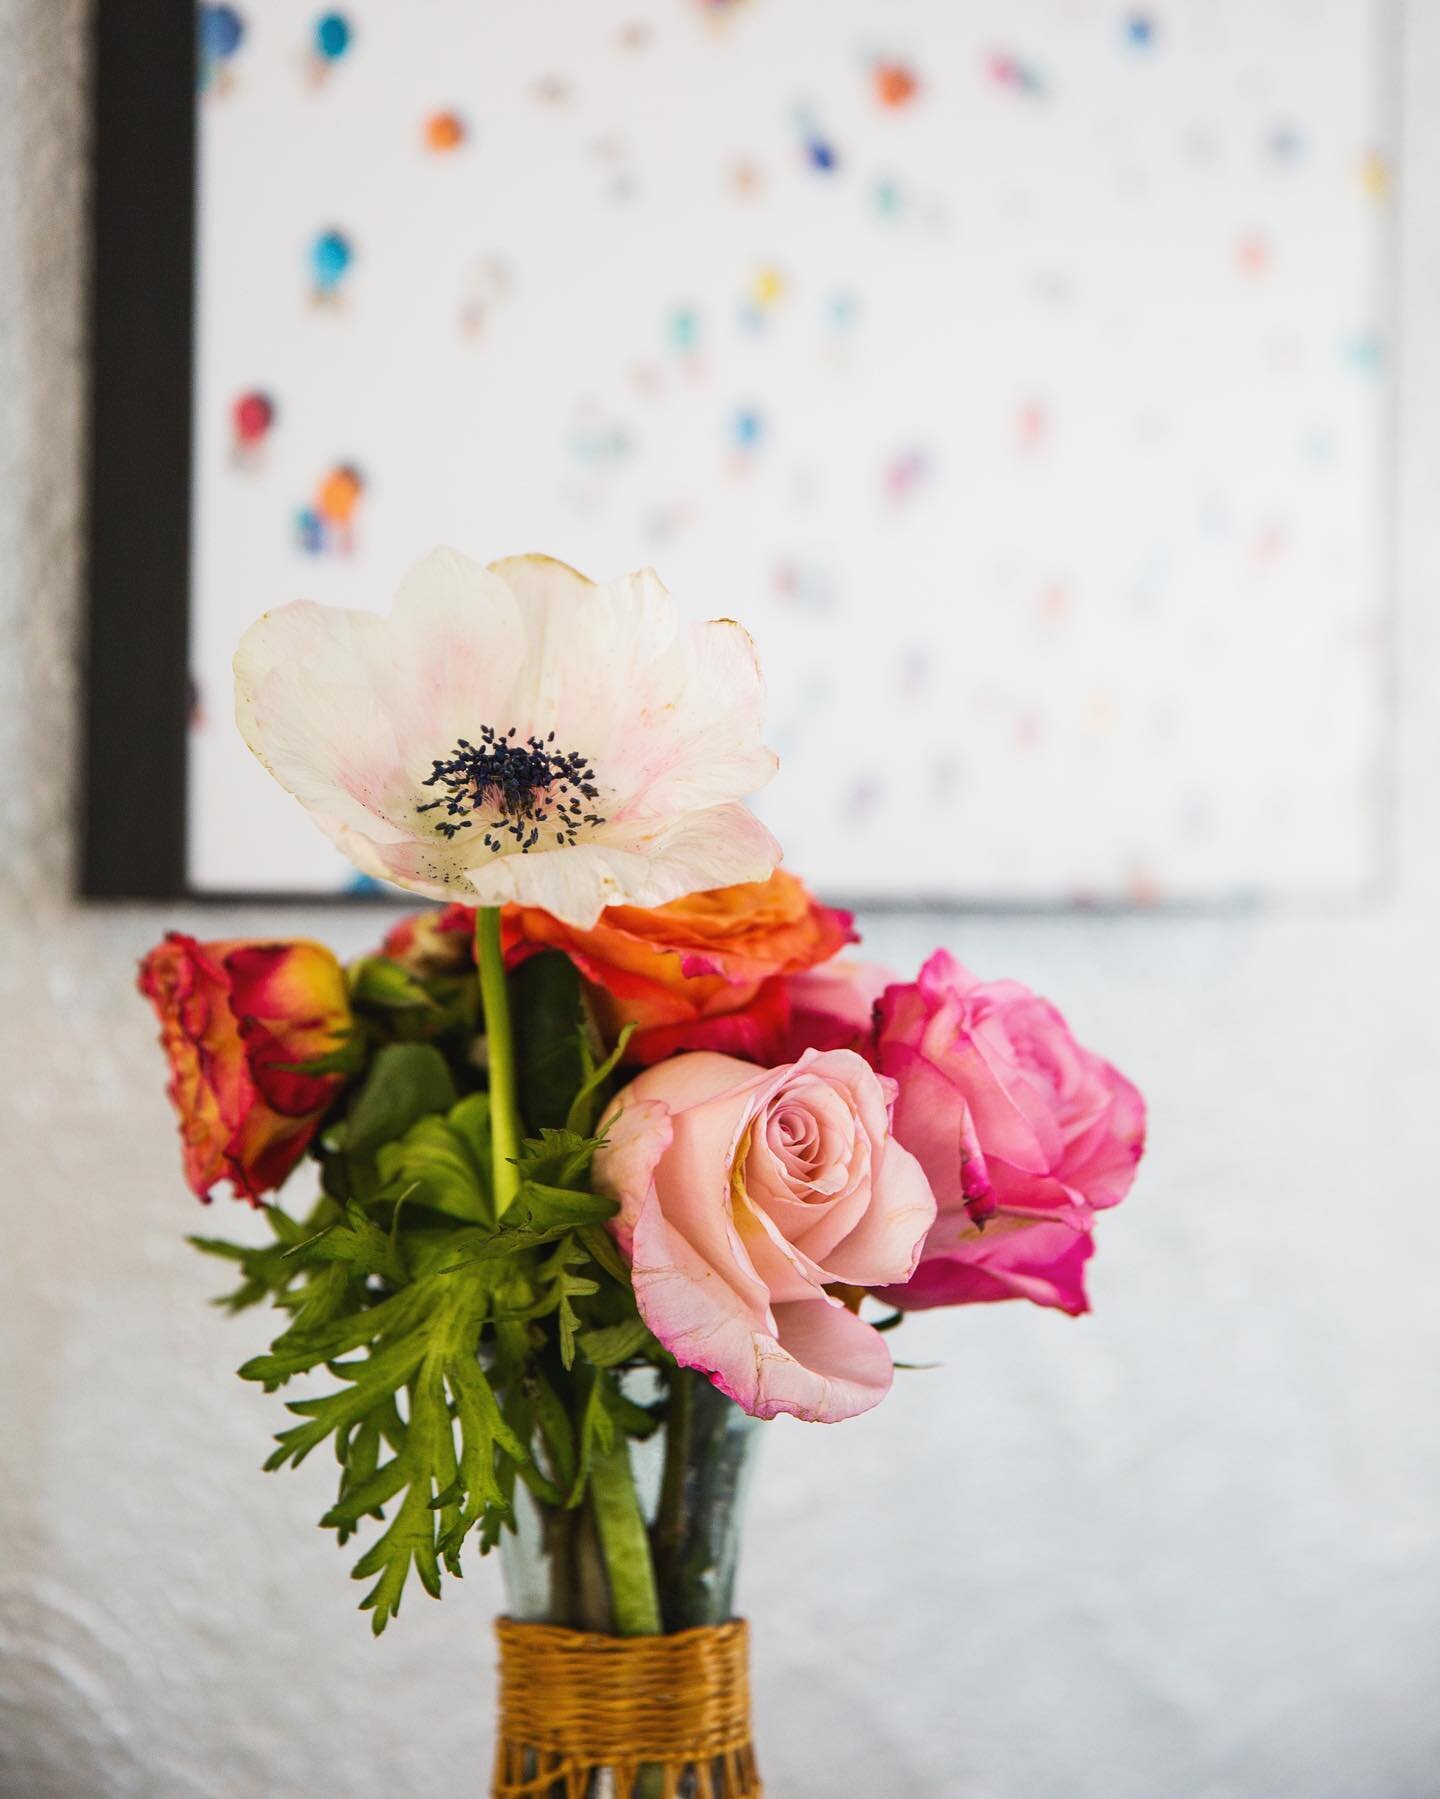 💐 
.
.
.
.
.

.
#mindfulmotionphoto #freelancingfemales #ctphotographer #connecticutliving #connecticutphotographer #interiordesign #roses #lifeisbeautiful #kitchendecor #windowlight #bouquet #flowers #freshflowers #airbnb #homesweethome #homedecor 